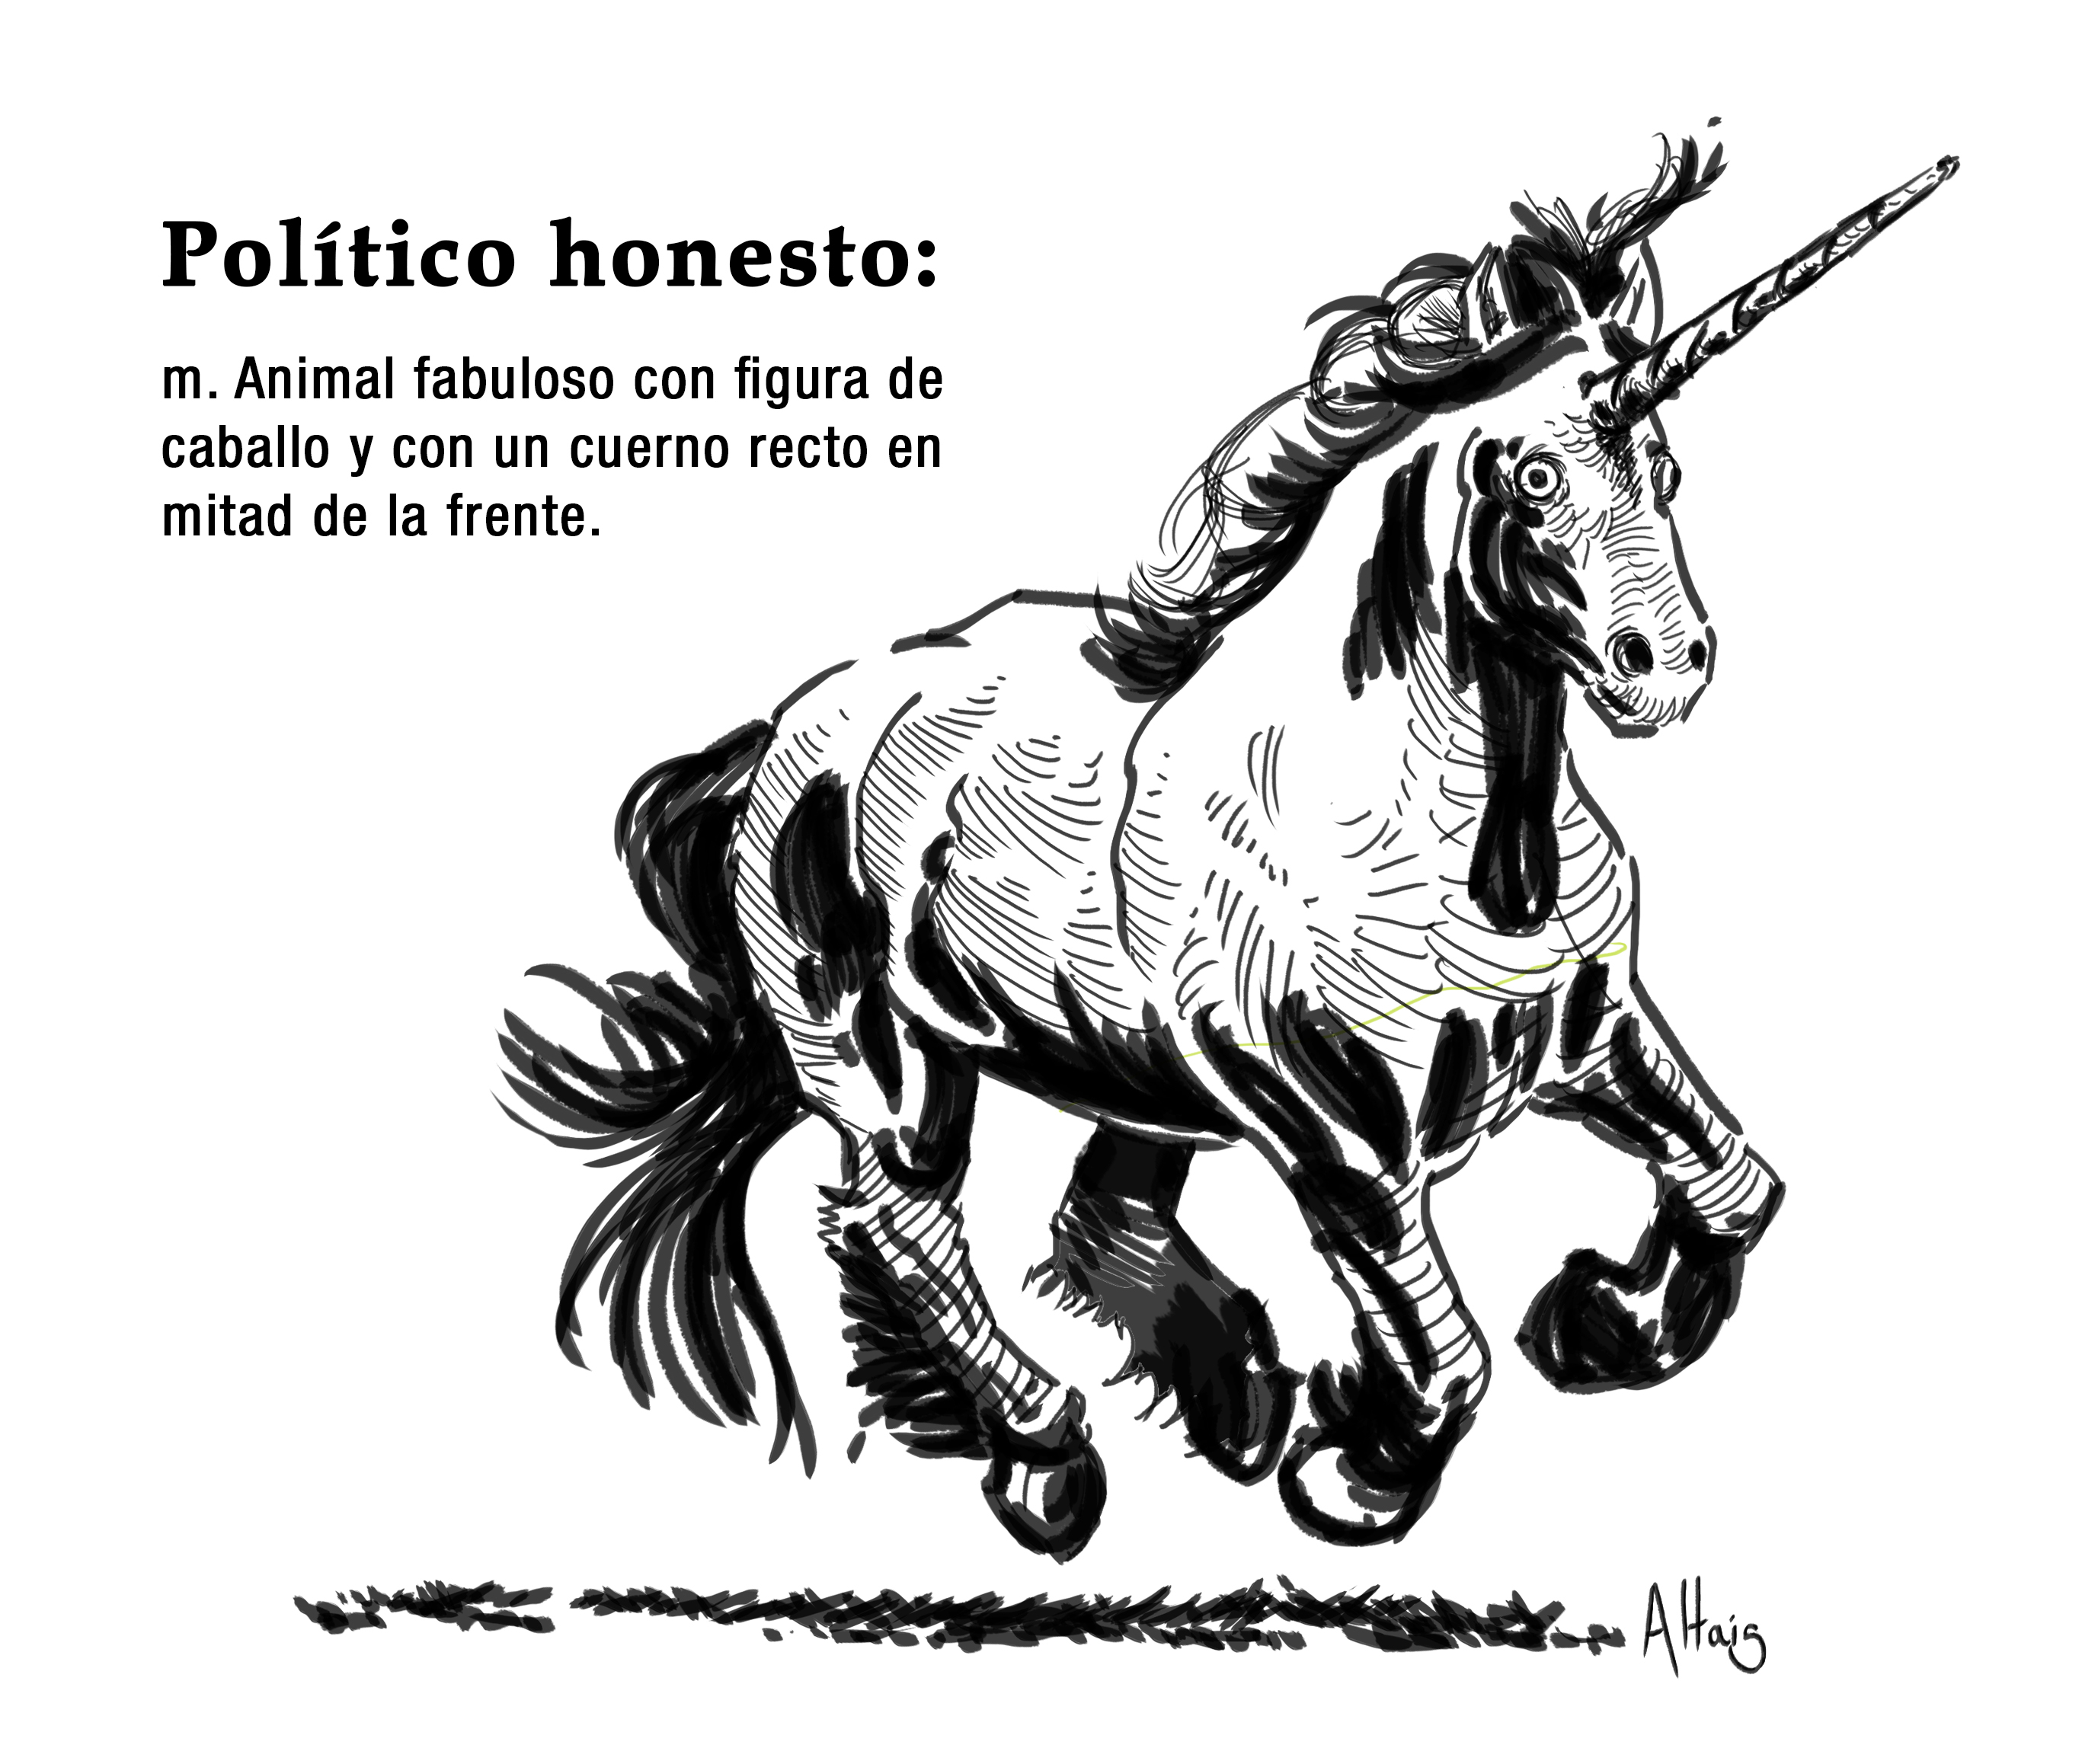 Politico honesto